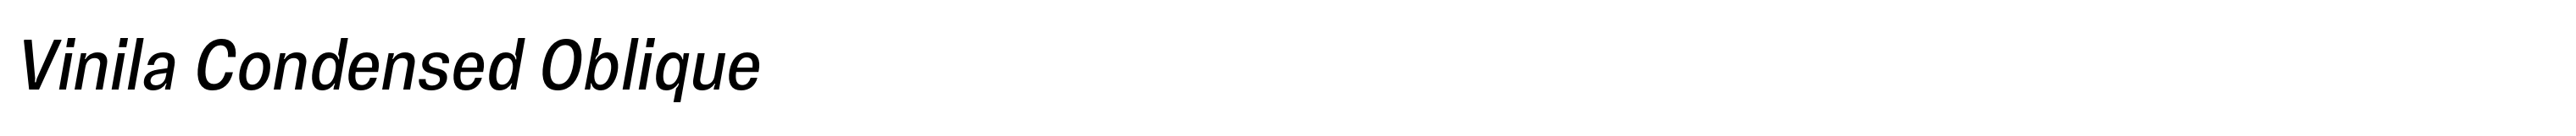 Vinila Condensed Oblique